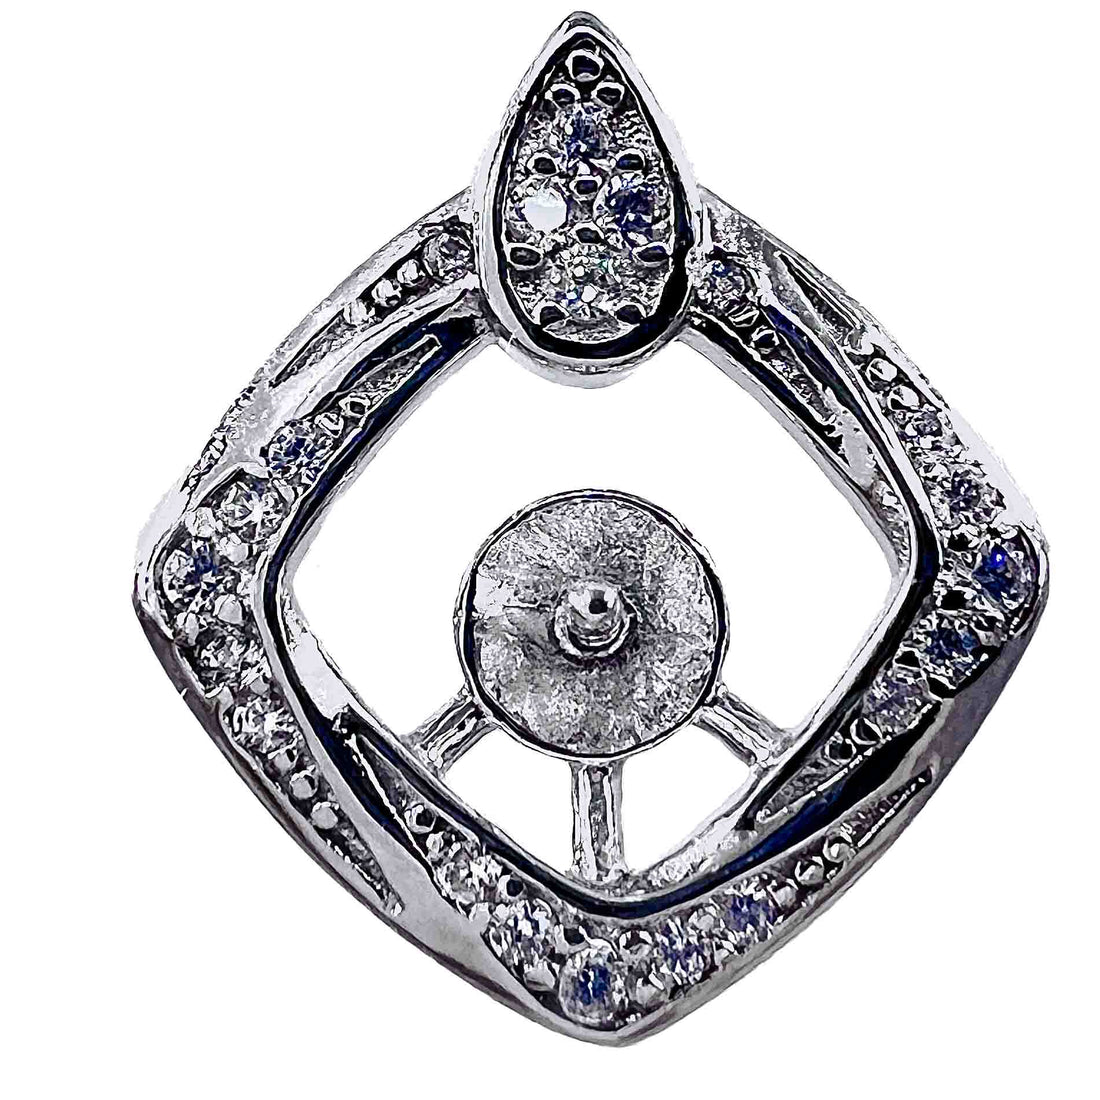 Mount Pendant .925 Sterling Silver Diamond Shape con lágrima superior con pedrería enmarcada